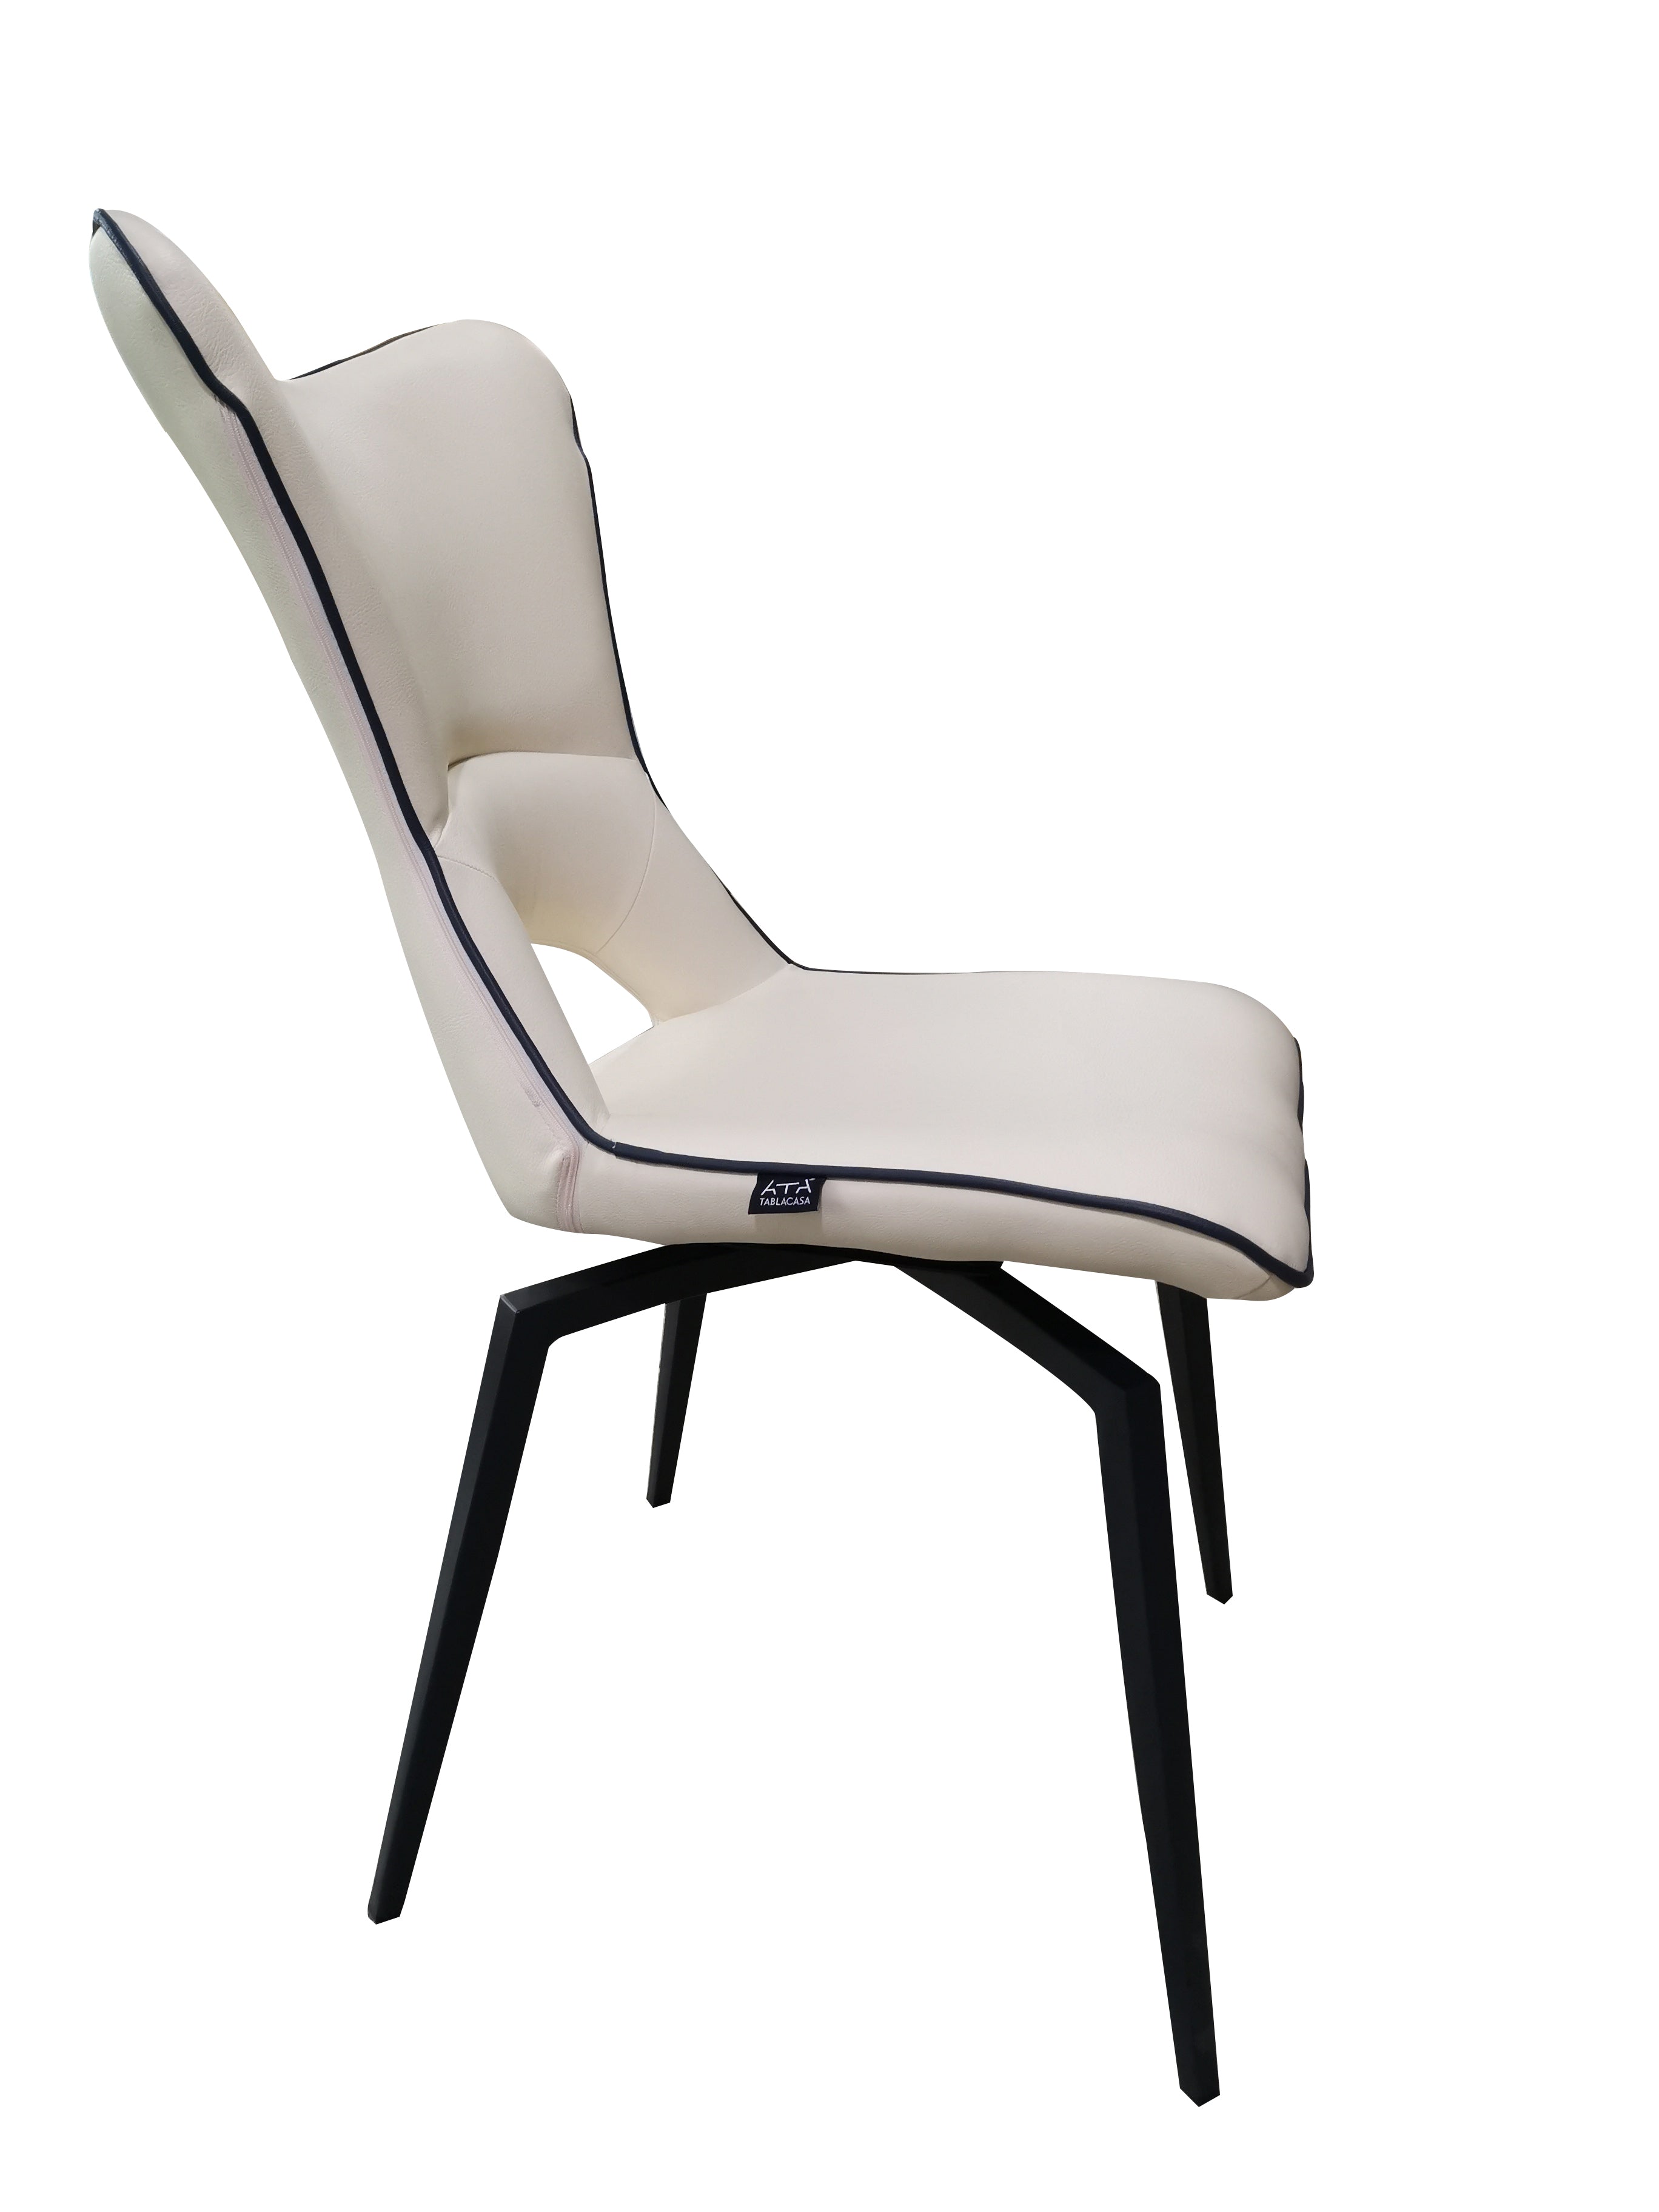 Chaise pivotante beige design pieds métal noir - Holga